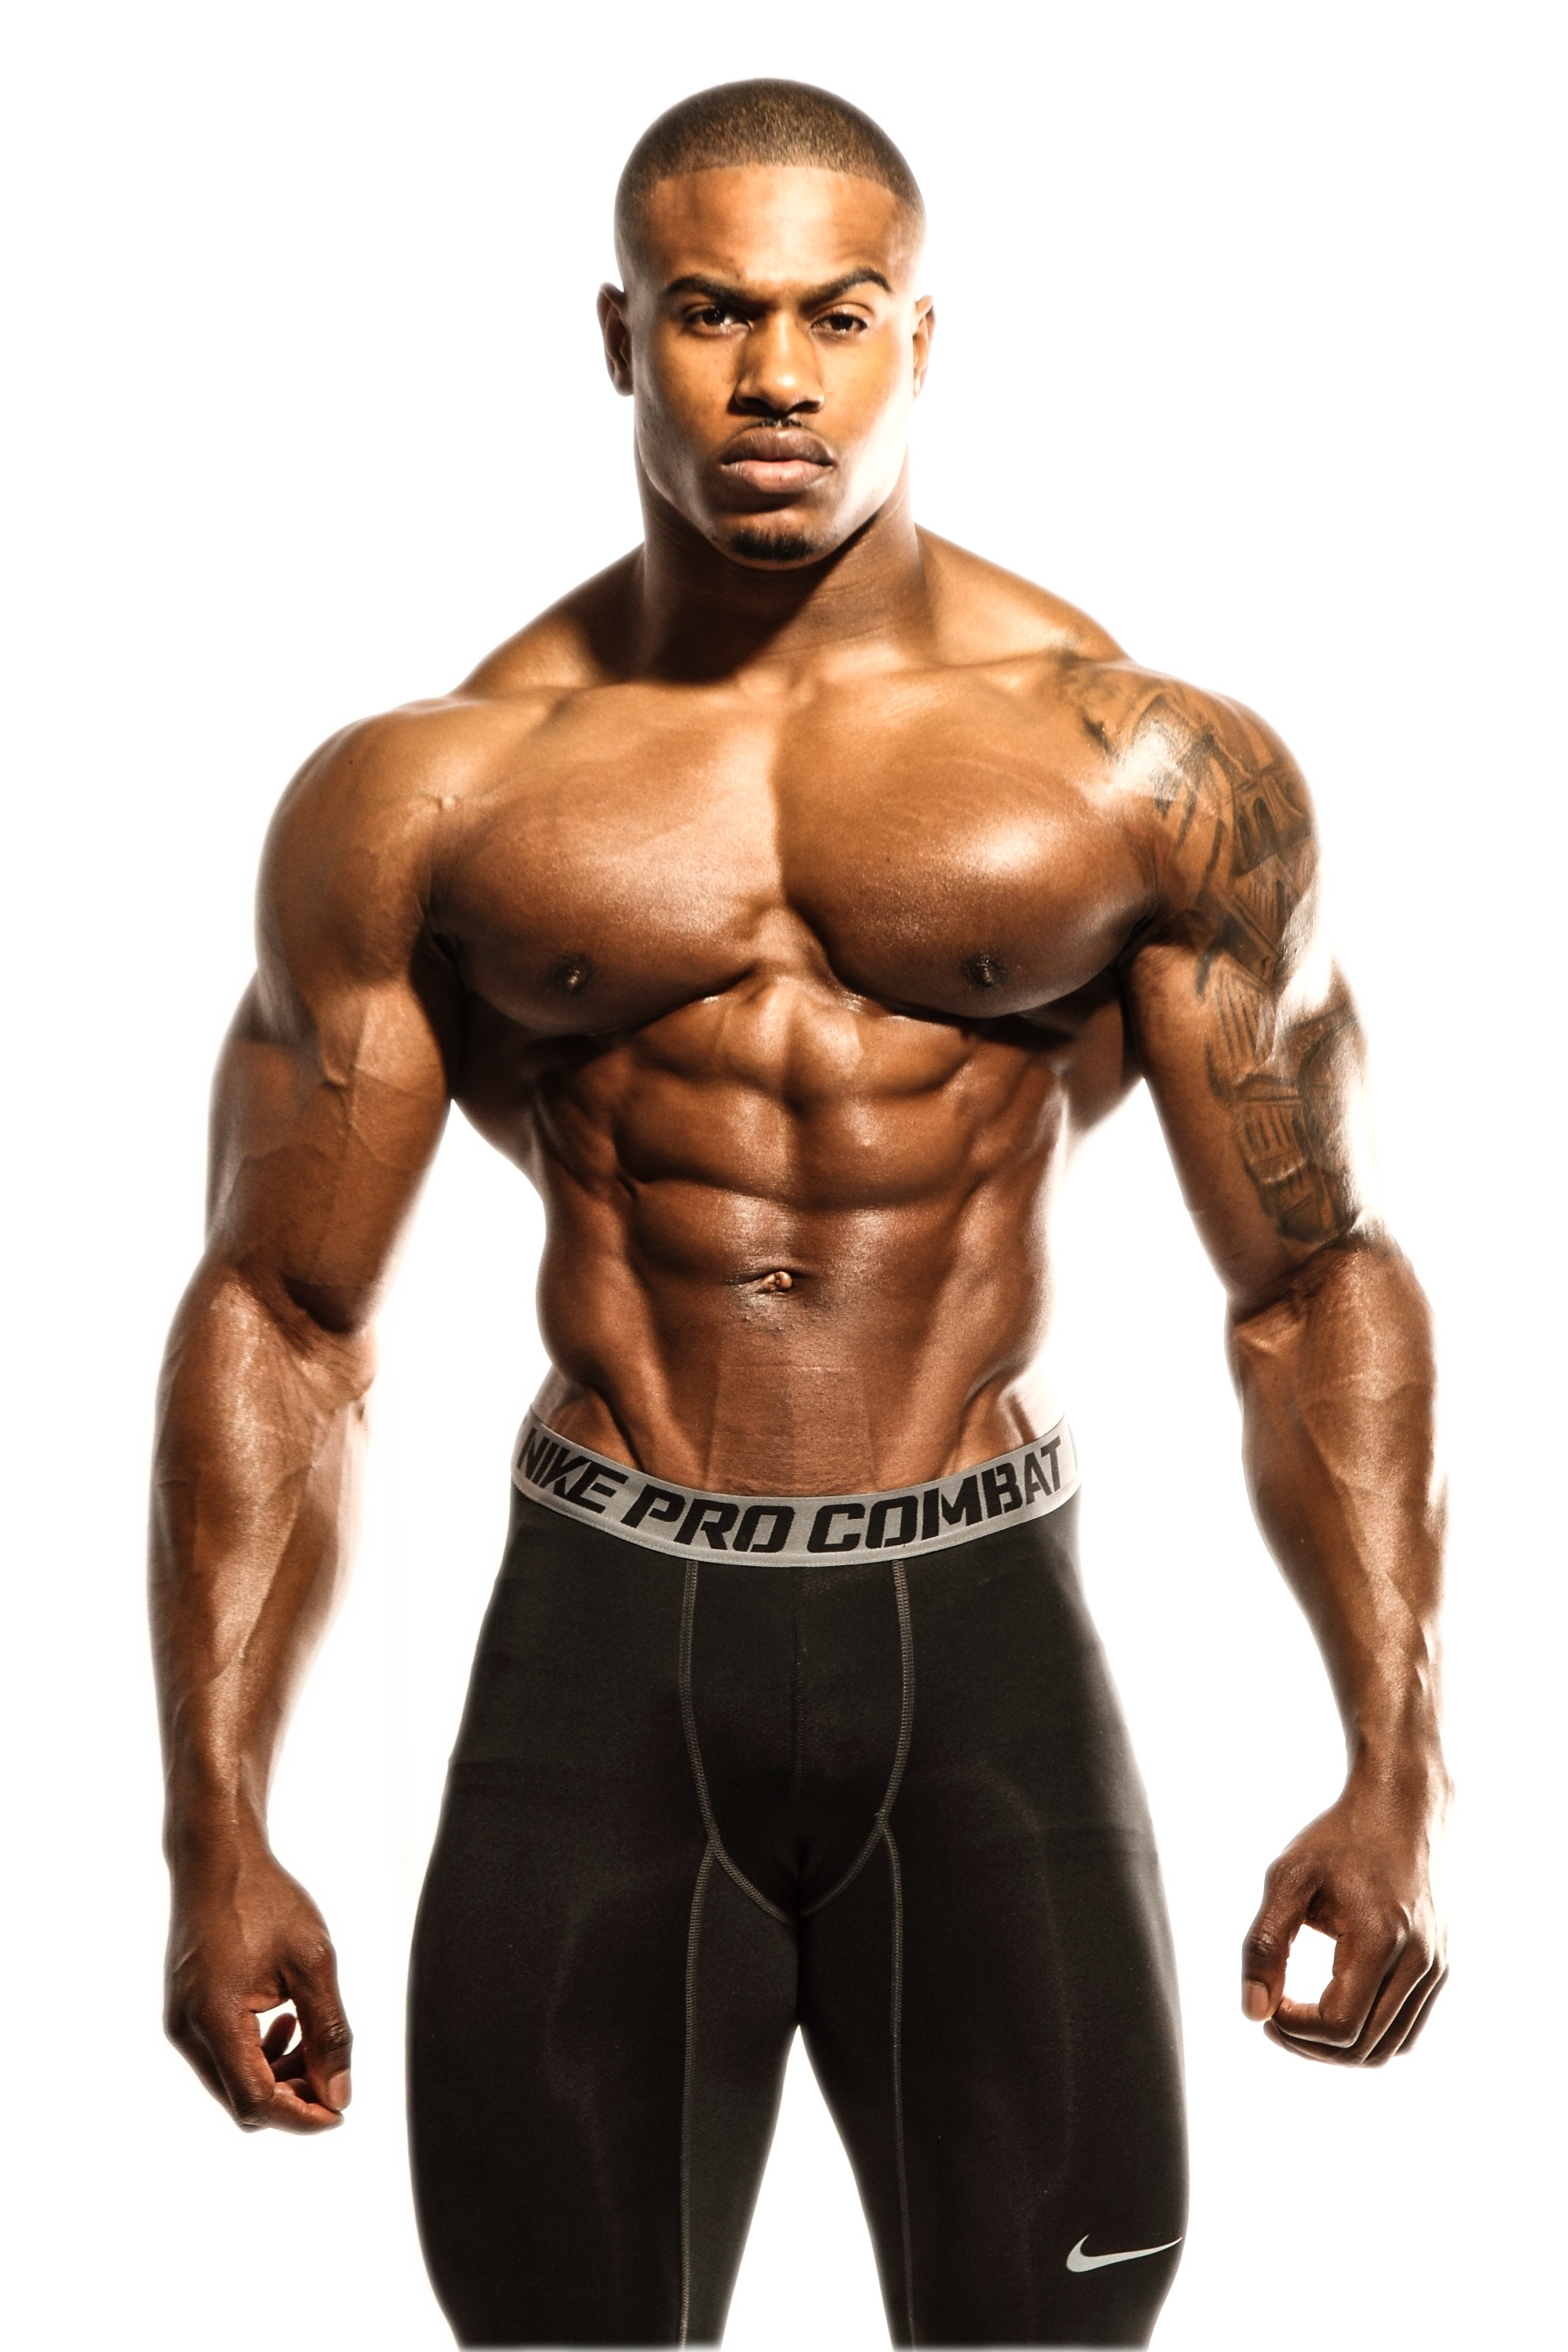 Bodybuilding PNG Image Transparent Backgrounds.